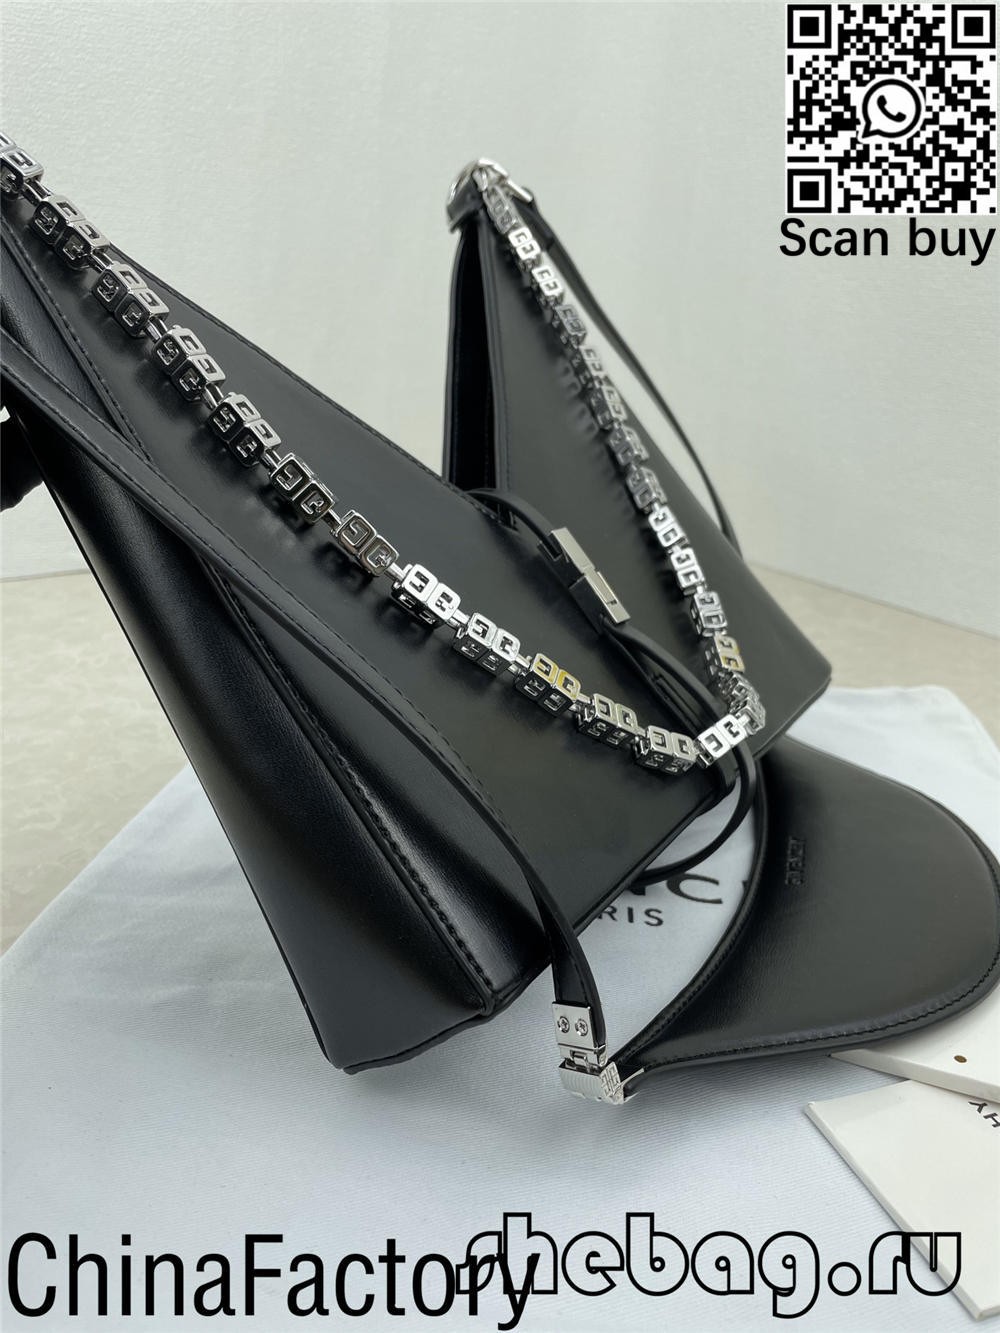 Bản sao của túi Givenchy màu đen: Givenchy Cut-Out (cập nhật năm 2022) - Chất lượng tốt nhất Túi Louis Vuitton giả trên Cửa hàng trực tuyến, Túi của nhà thiết kế sao chép ru